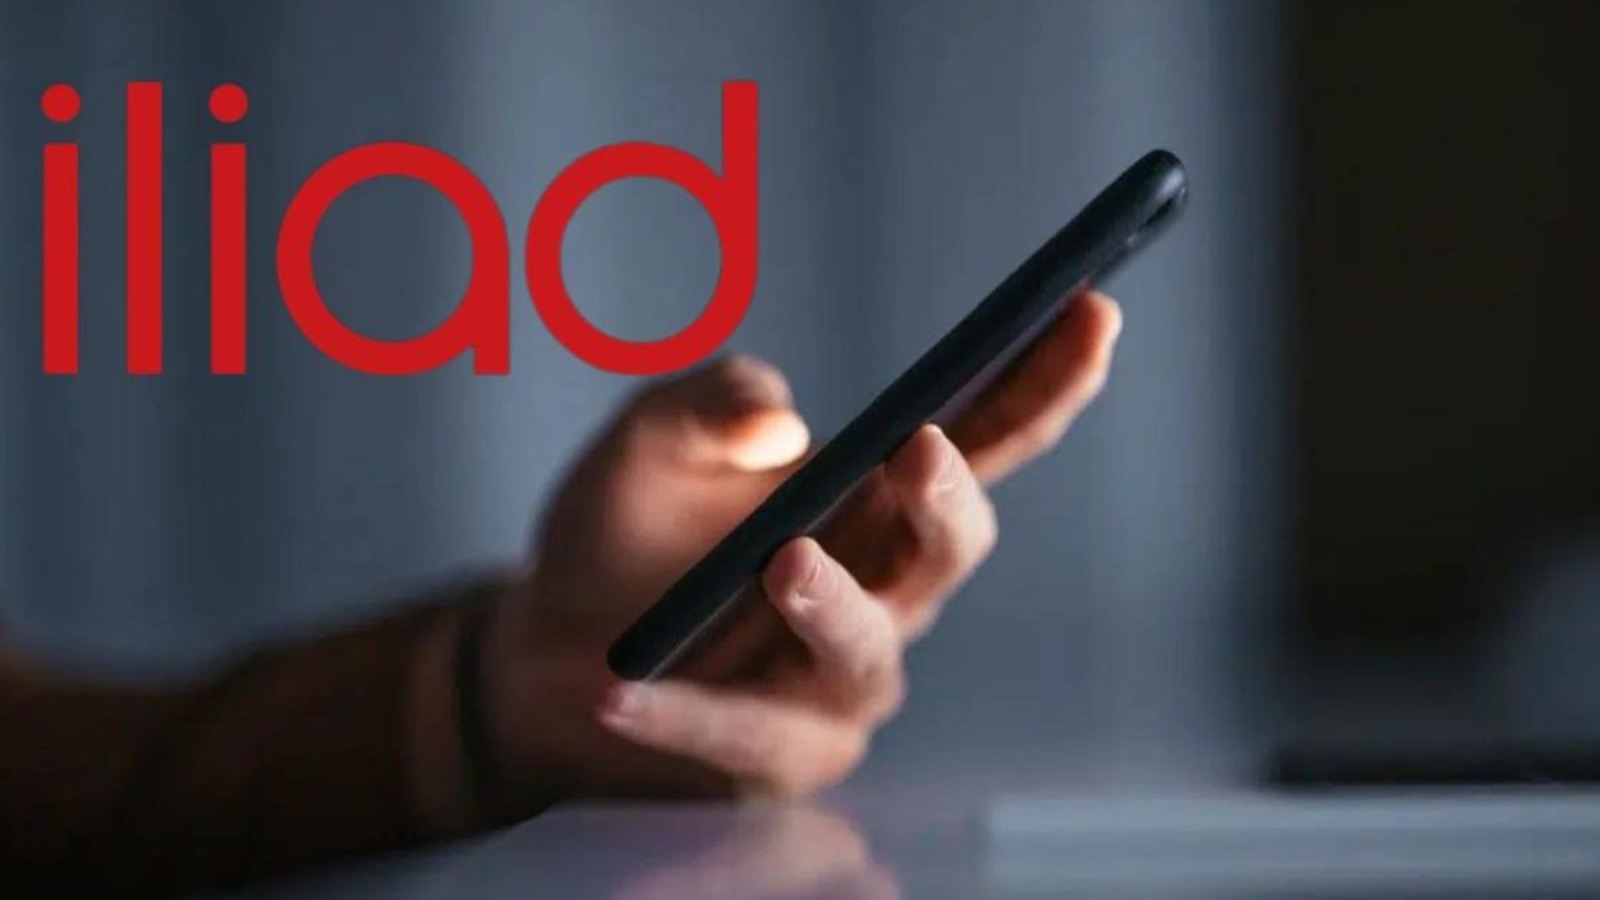 Iliad Flash 200 e 150, le due offerte che battono Vodafone 